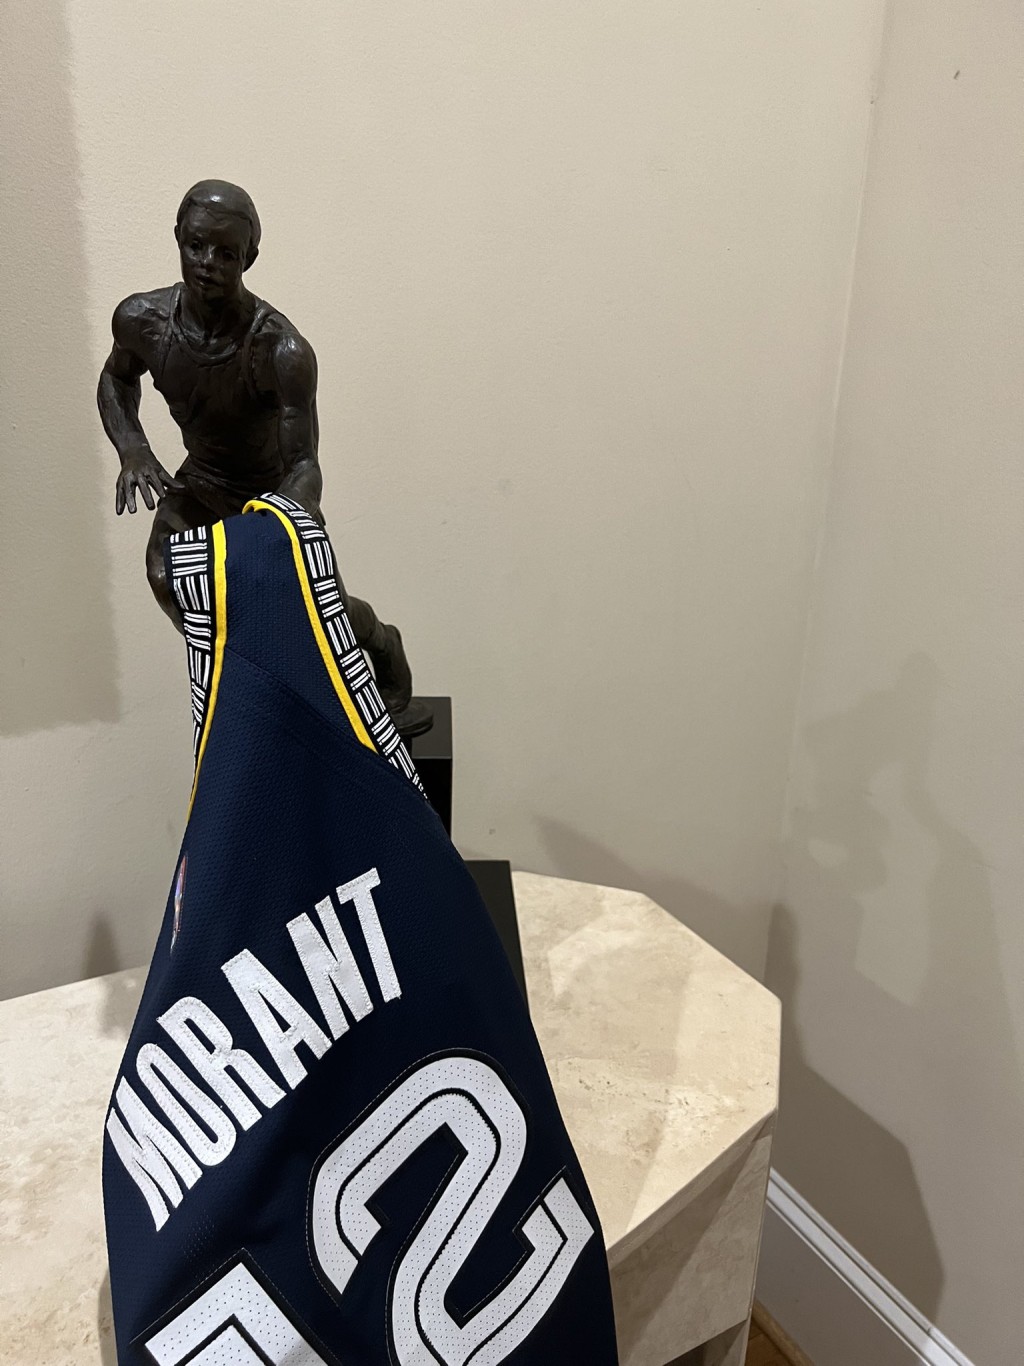 艾佛遜貼出自己的MVP獎狀，掛起莫蘭特的球衣。 艾佛遜Twitter圖片